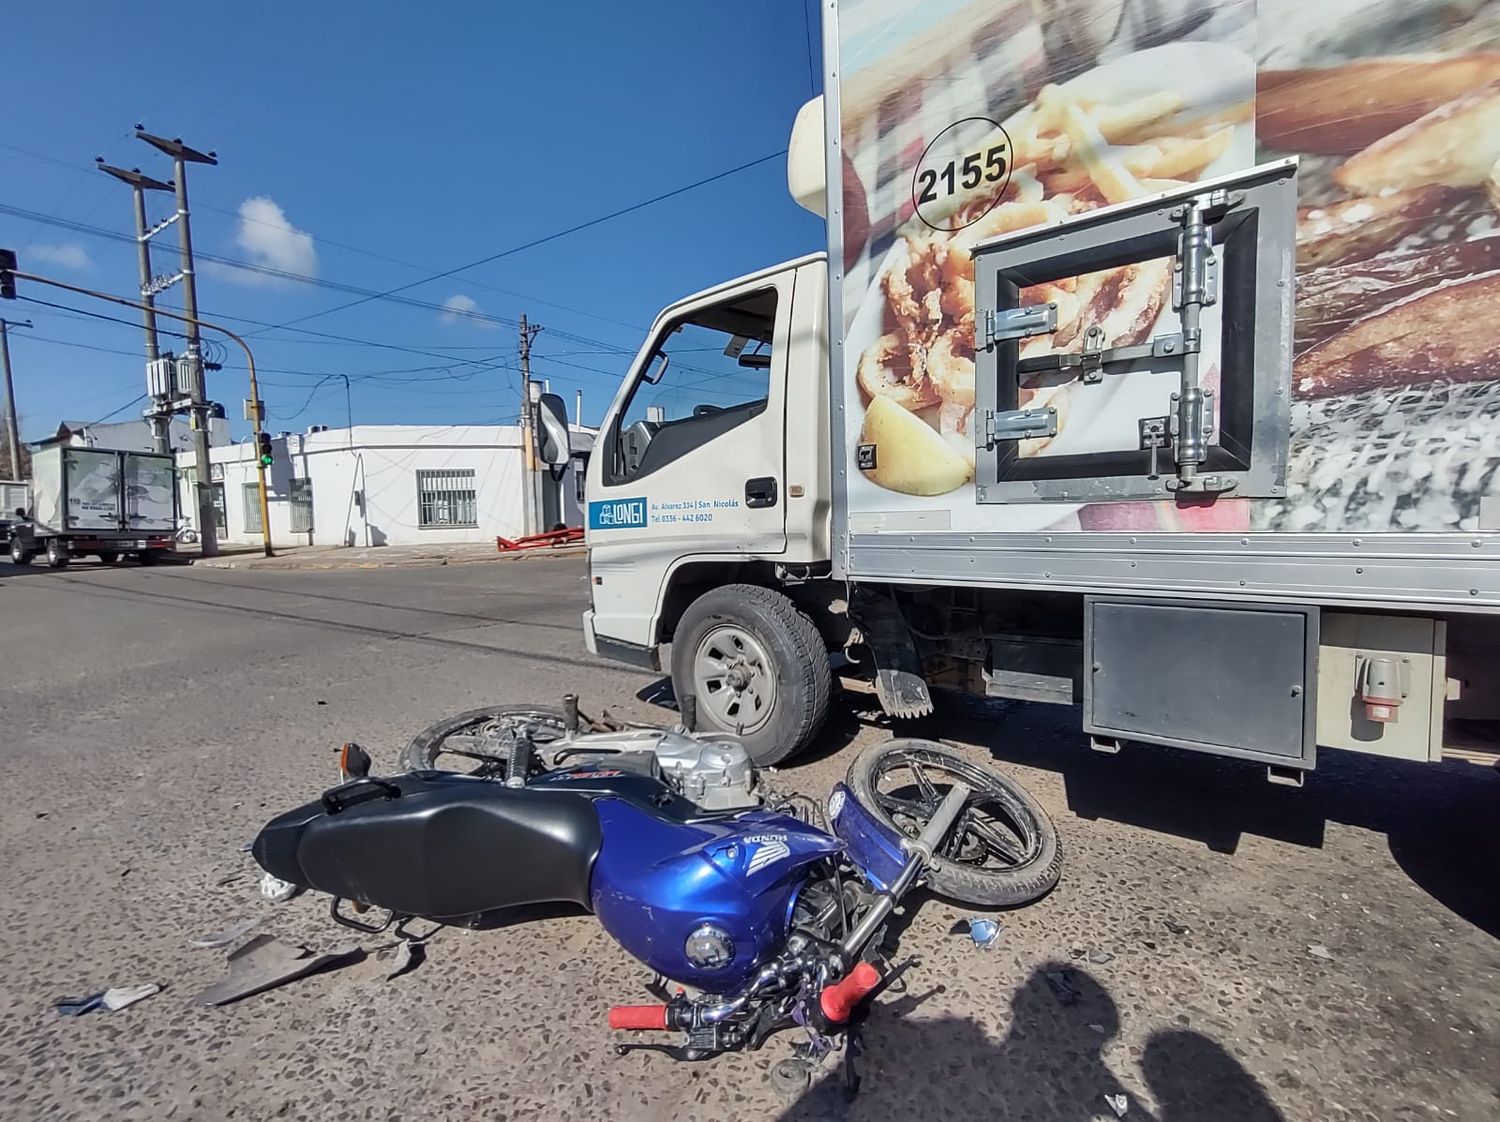 Motociclista trasladada al Hospital tras chocar contra un camión de alimentos en Sarmiento y Caseros